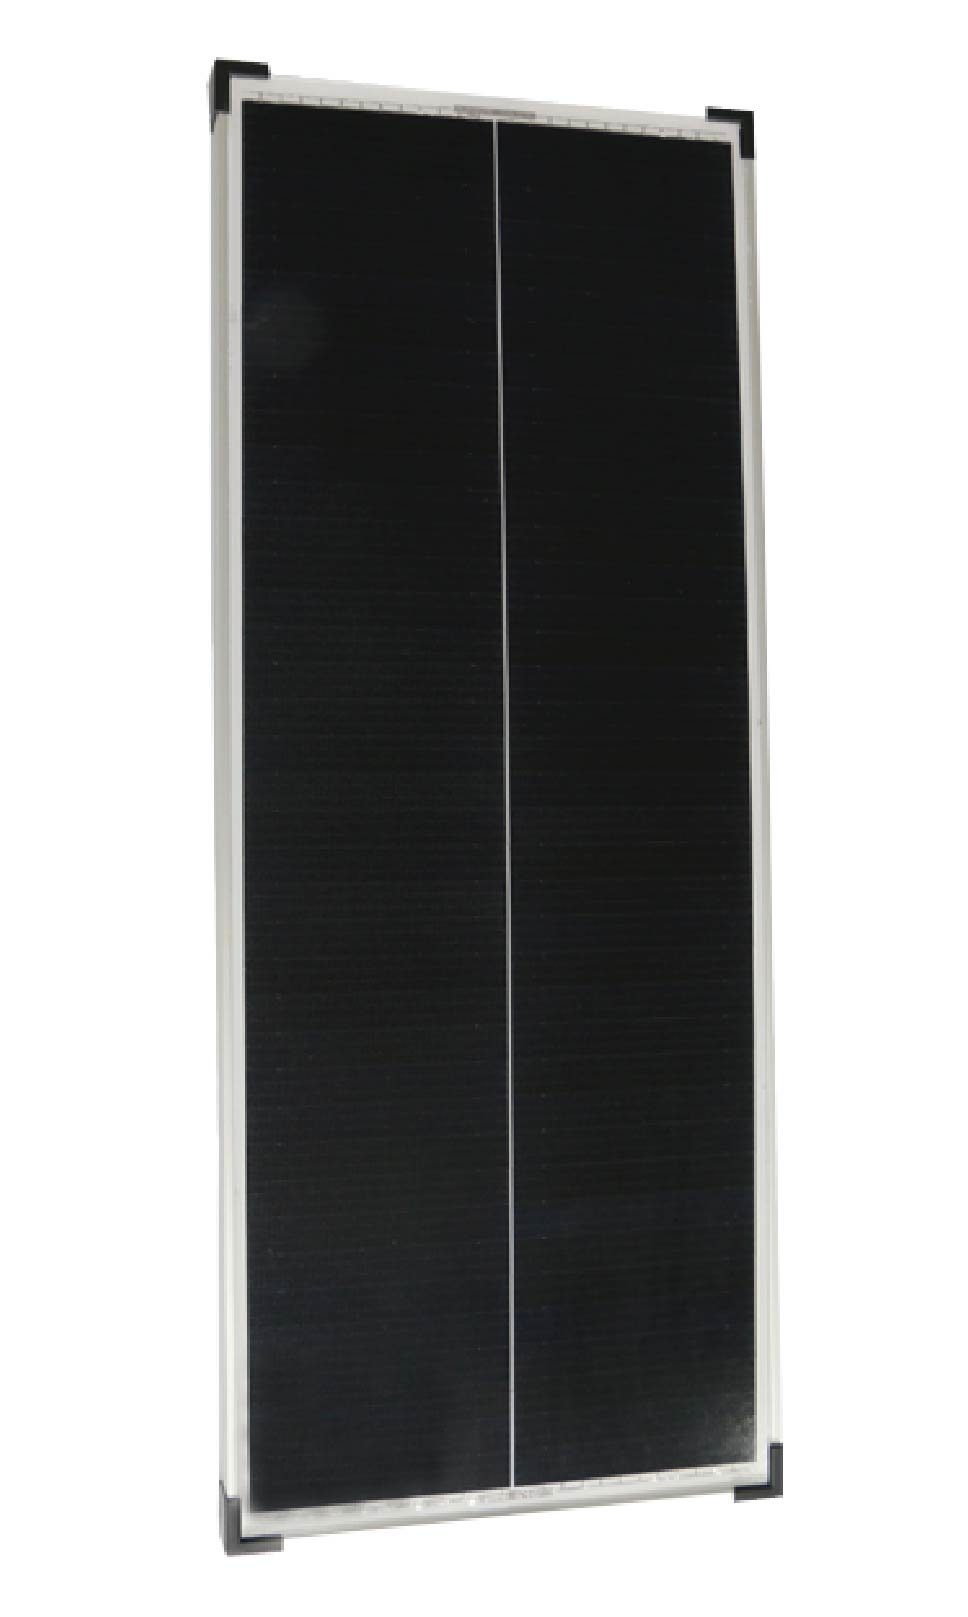 Campergold Solaranlage 2 X 100W Mono Solarmodul für Camper, Wohnwagen & Wohnmobil Silber-46